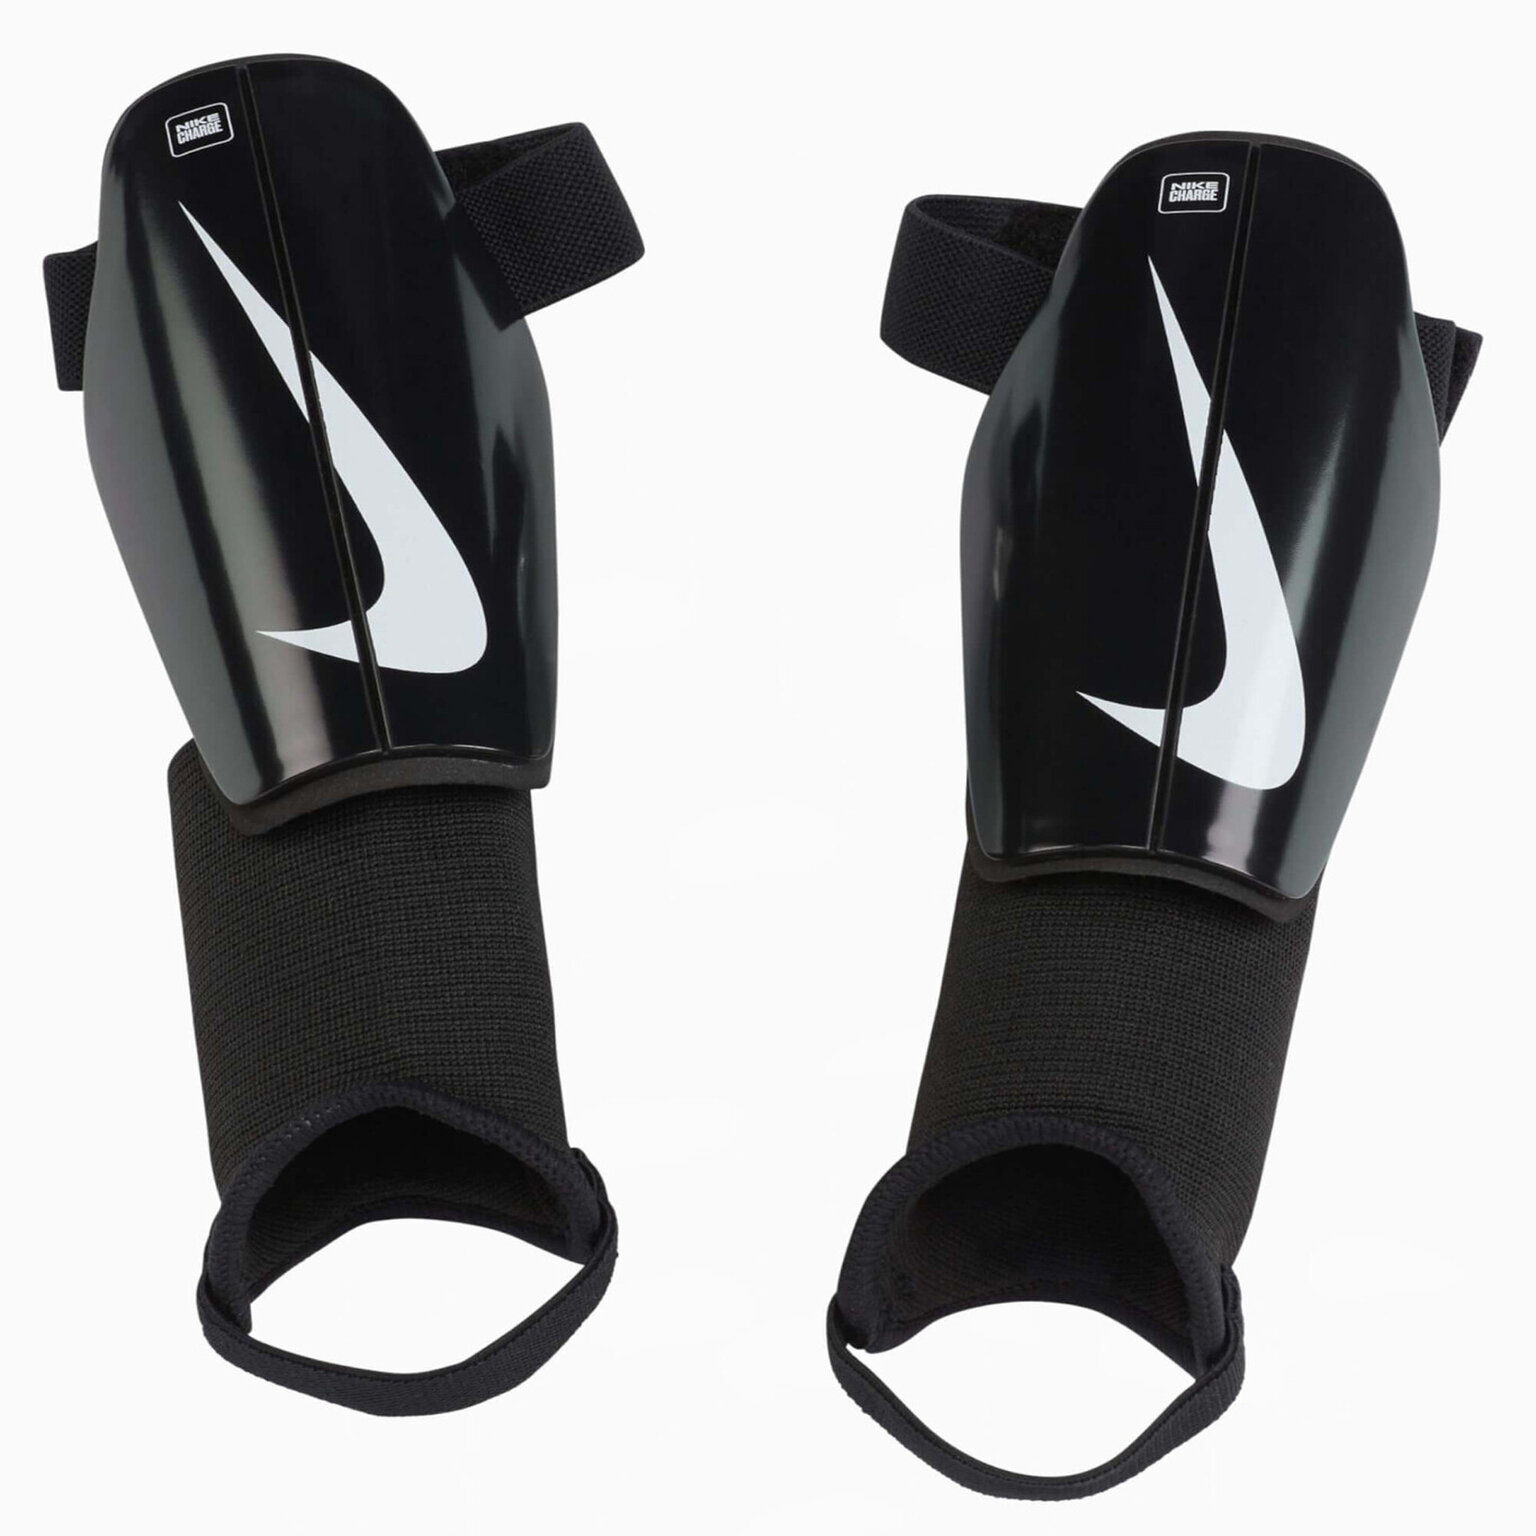 Щитки детские Nike Charge DX4610-010, размер S, Черный